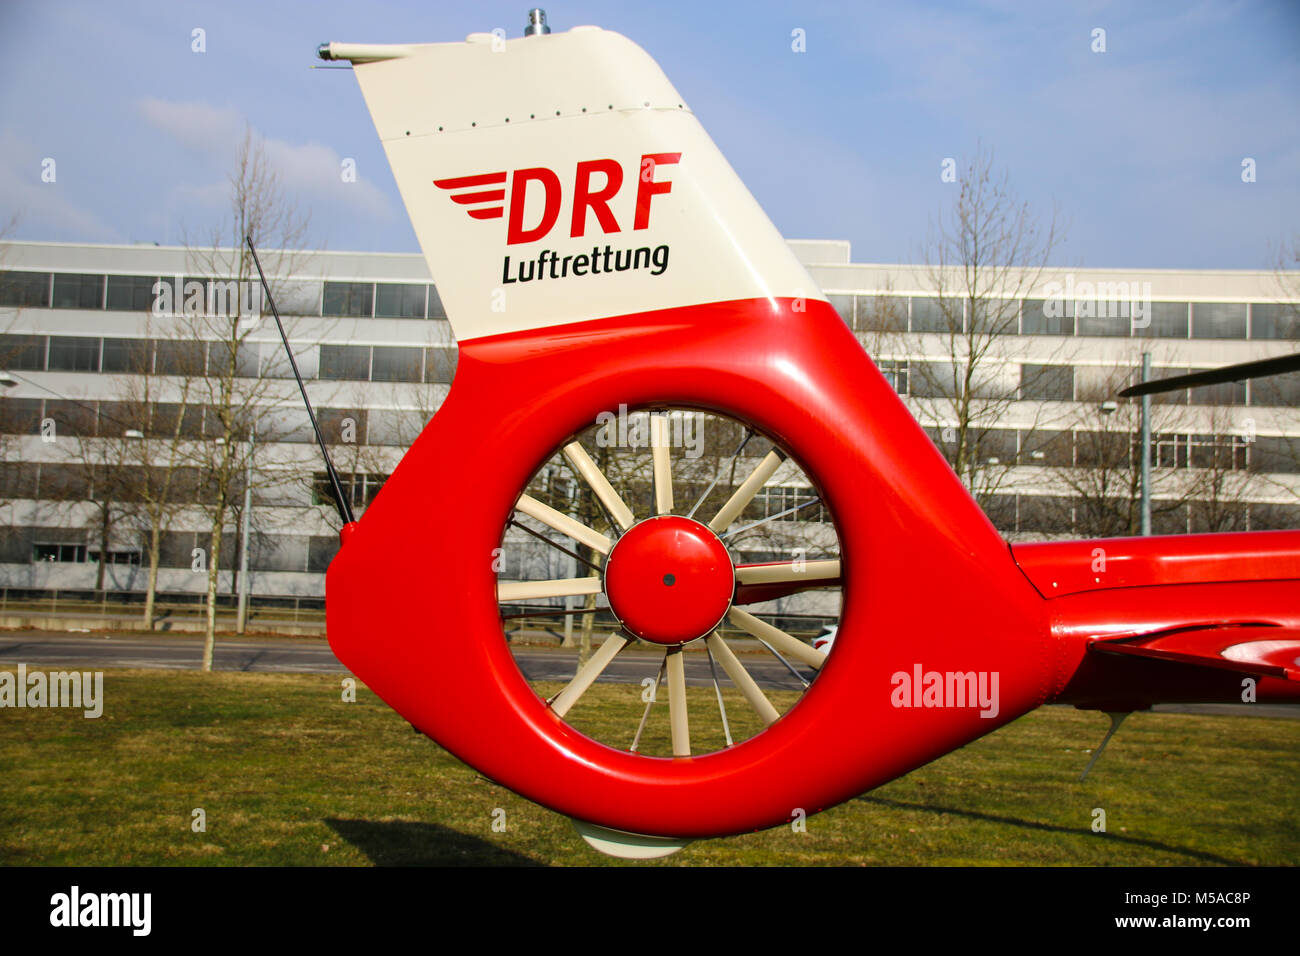 Magdeburg, Allemagne - 21 Février 2018 : rotor de queue d'un hélicoptère de l'aviation allemande de la DRF de sauvetage Airbus de type H135. Banque D'Images